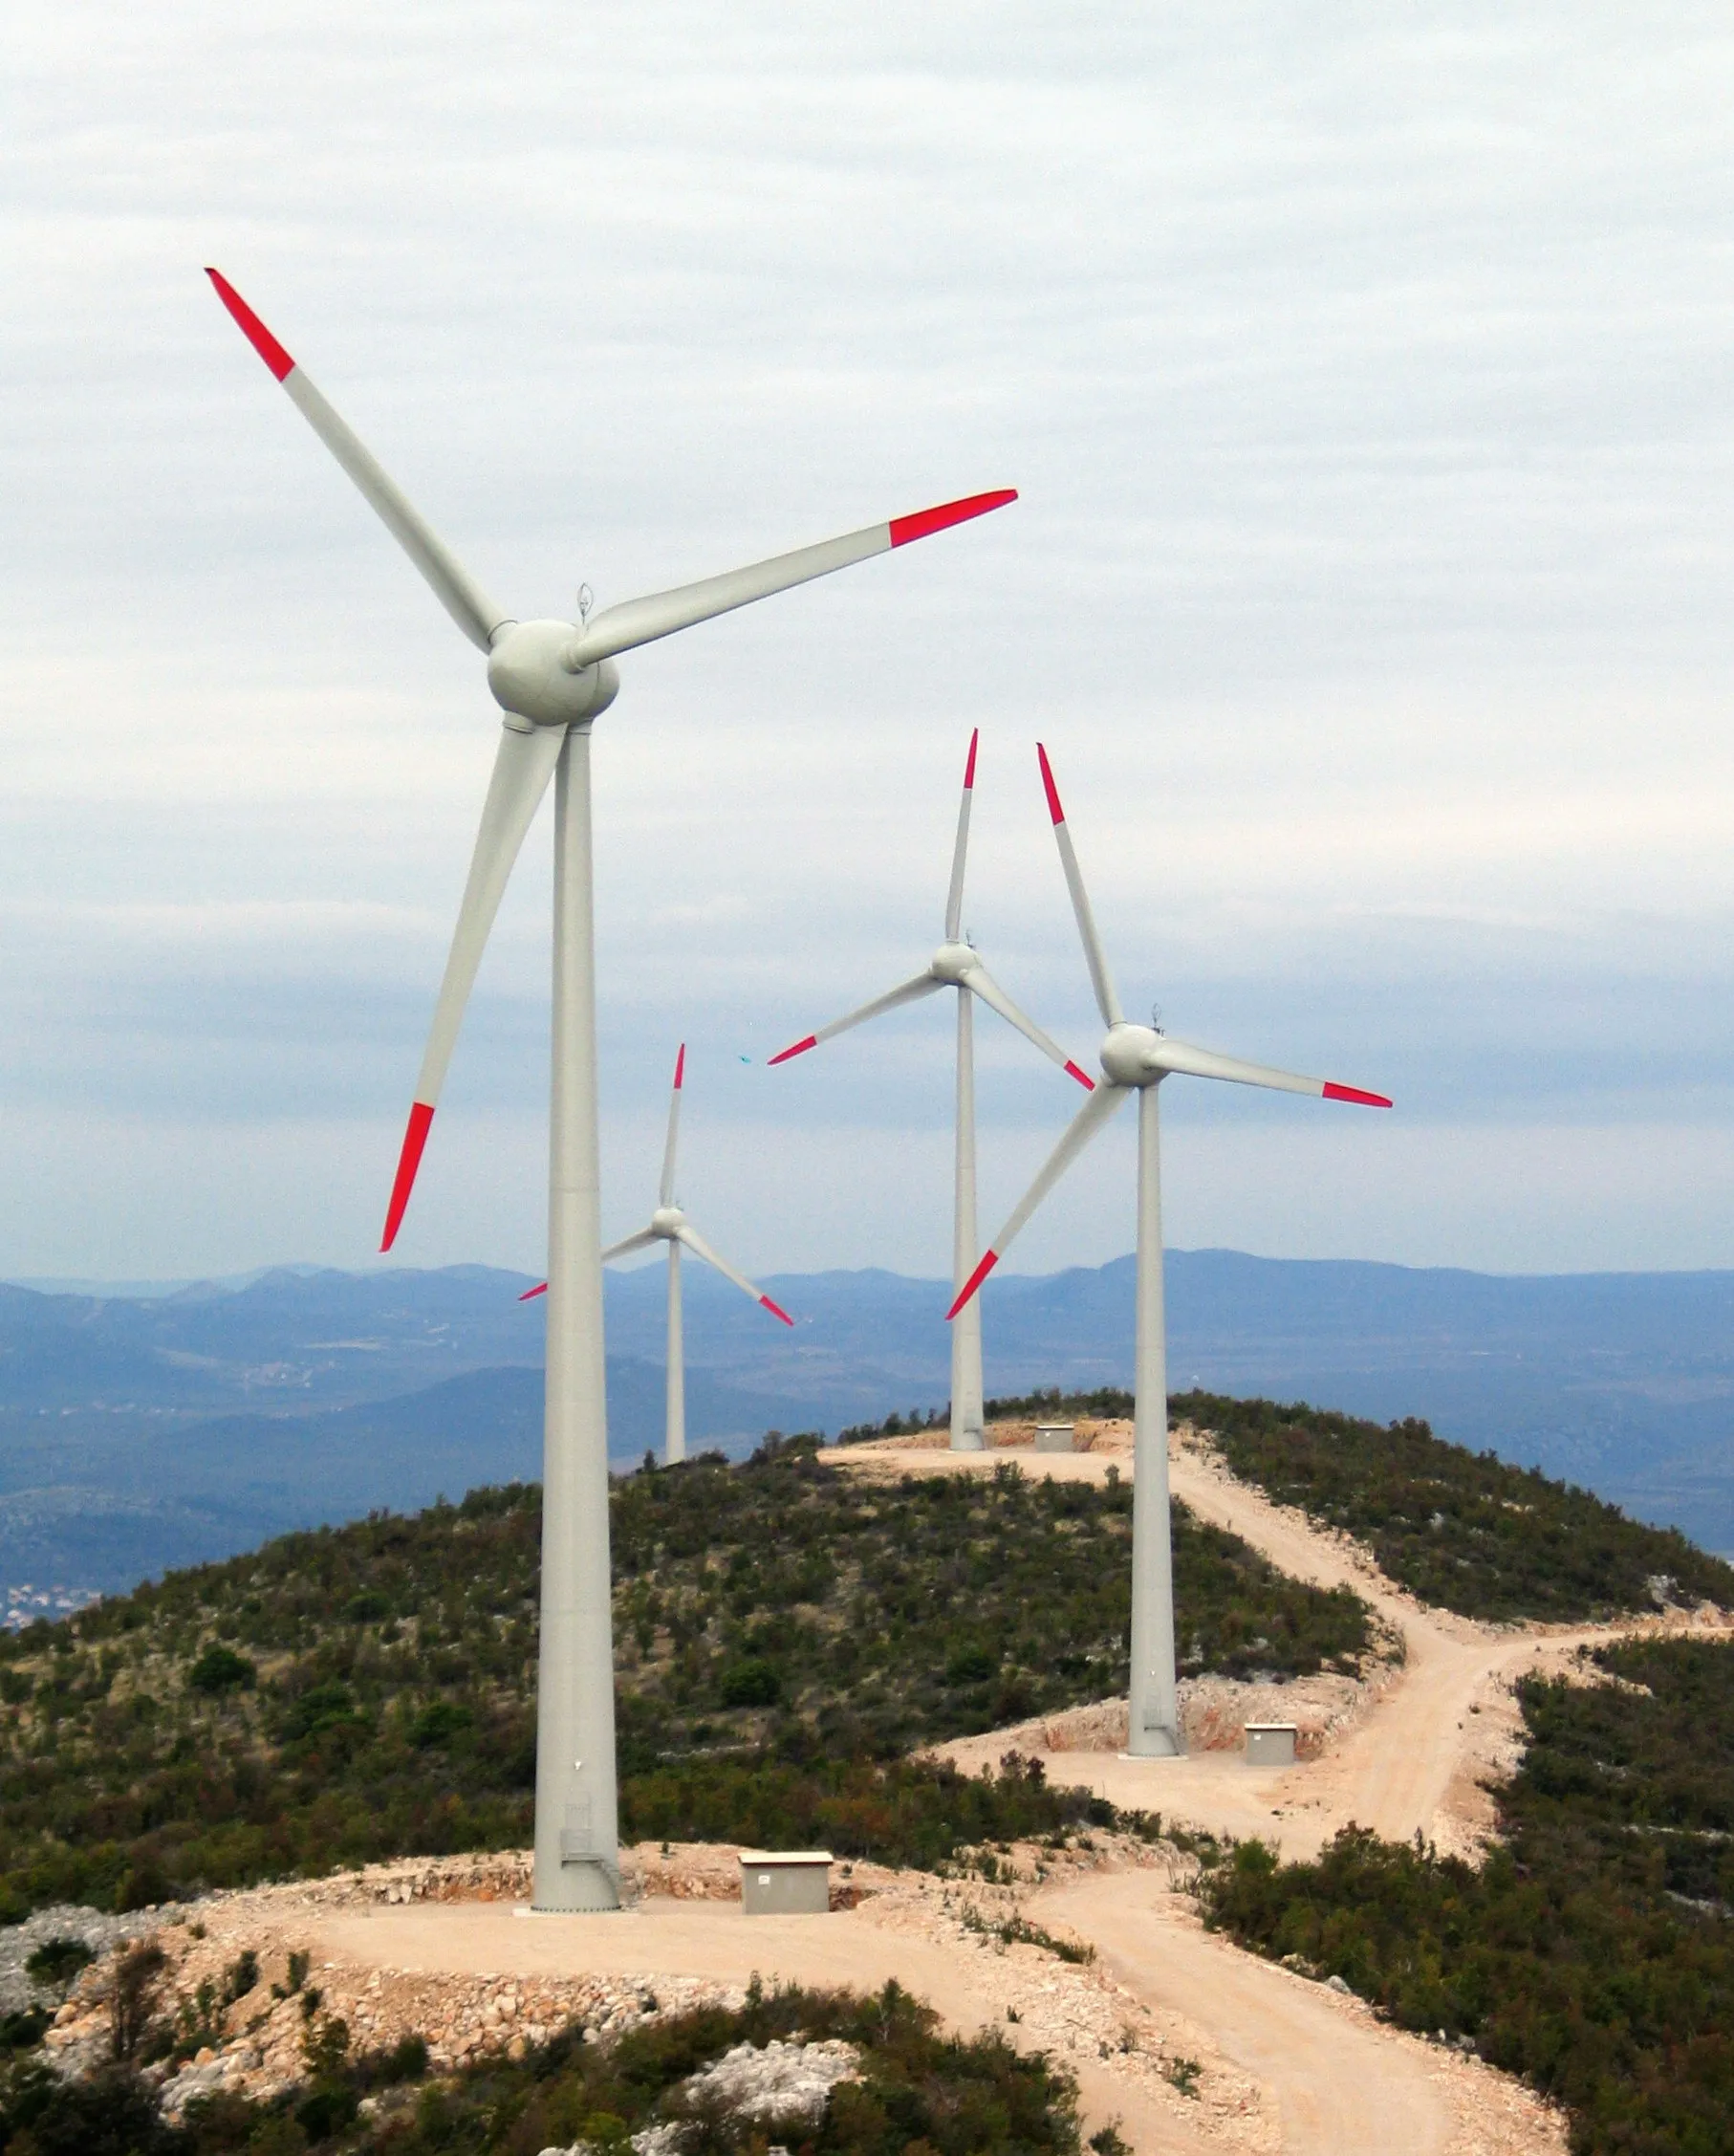 Photo showing: "Vjetroelektrana Trtar-Krtolin" wind farm near Šibenik, Croatia